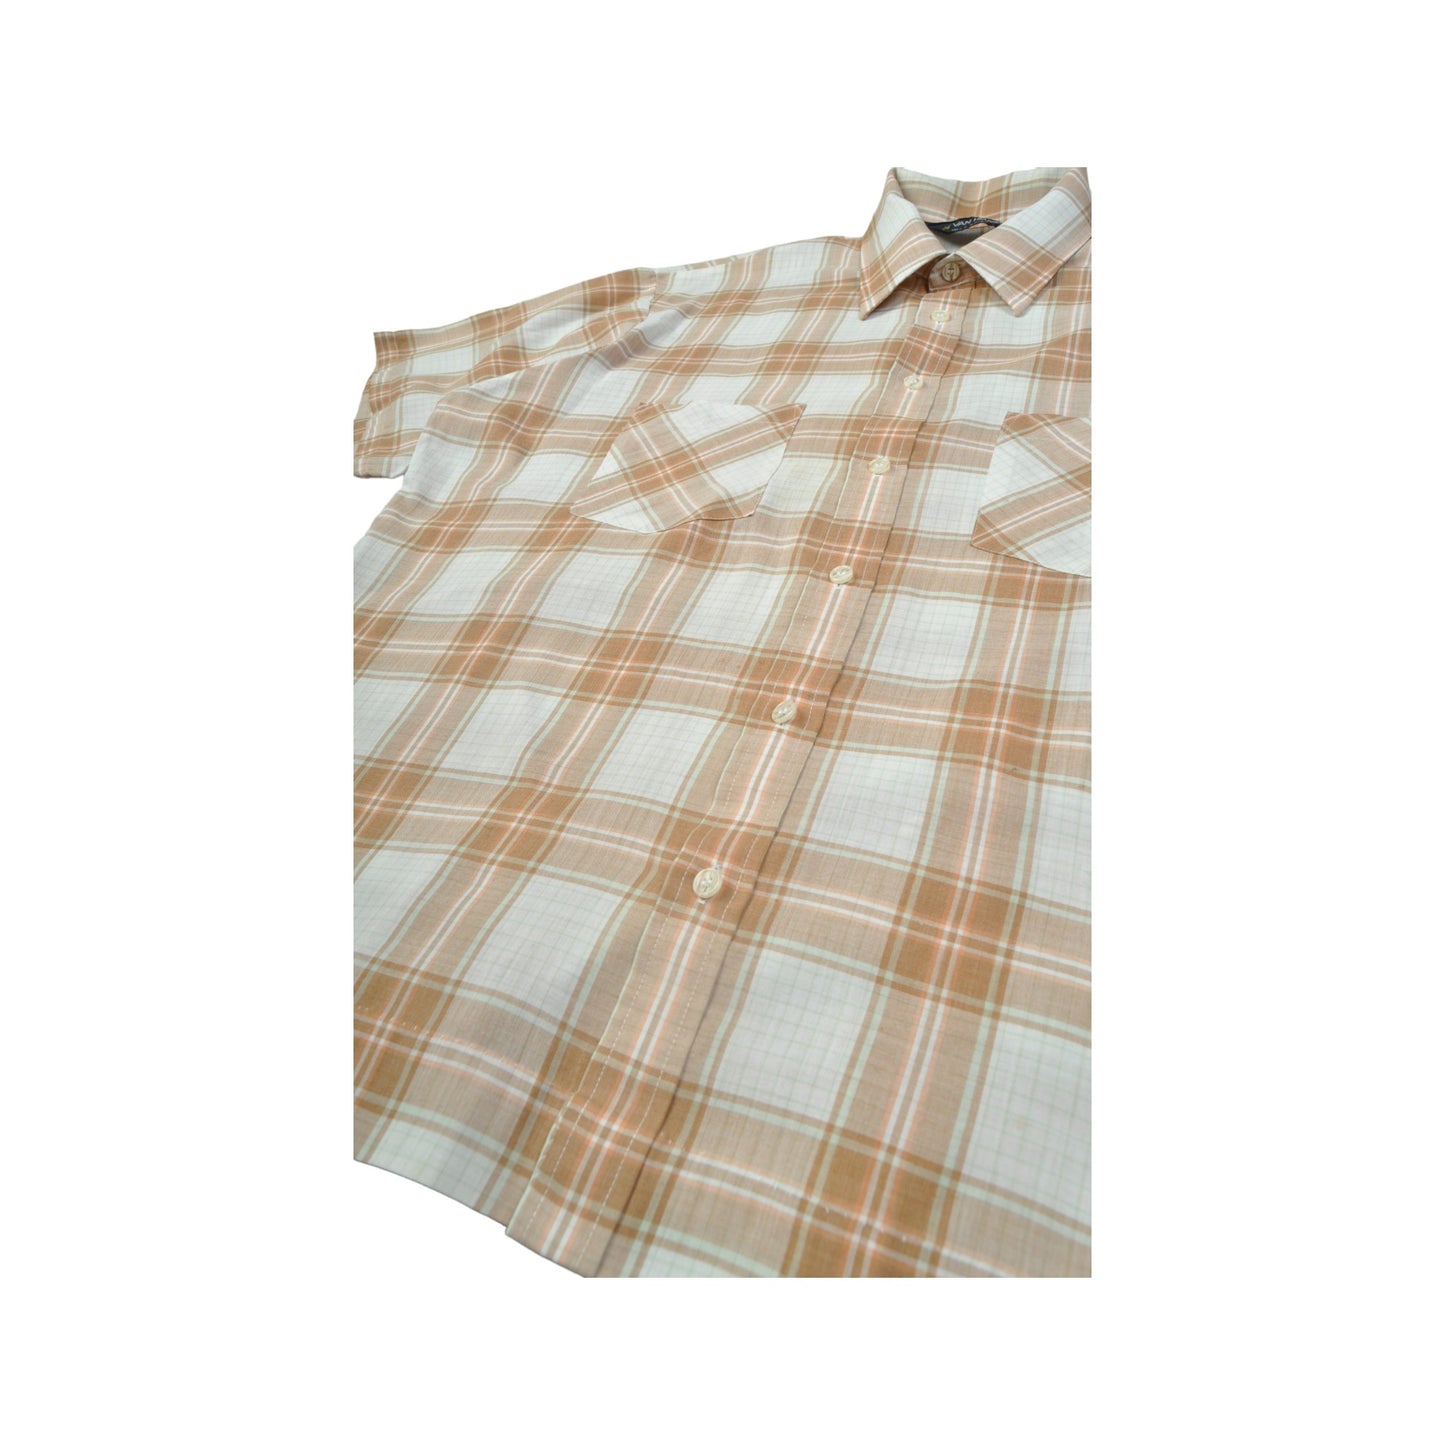 Vintage Shirt Check Pattern Short Sleeve Beige Large